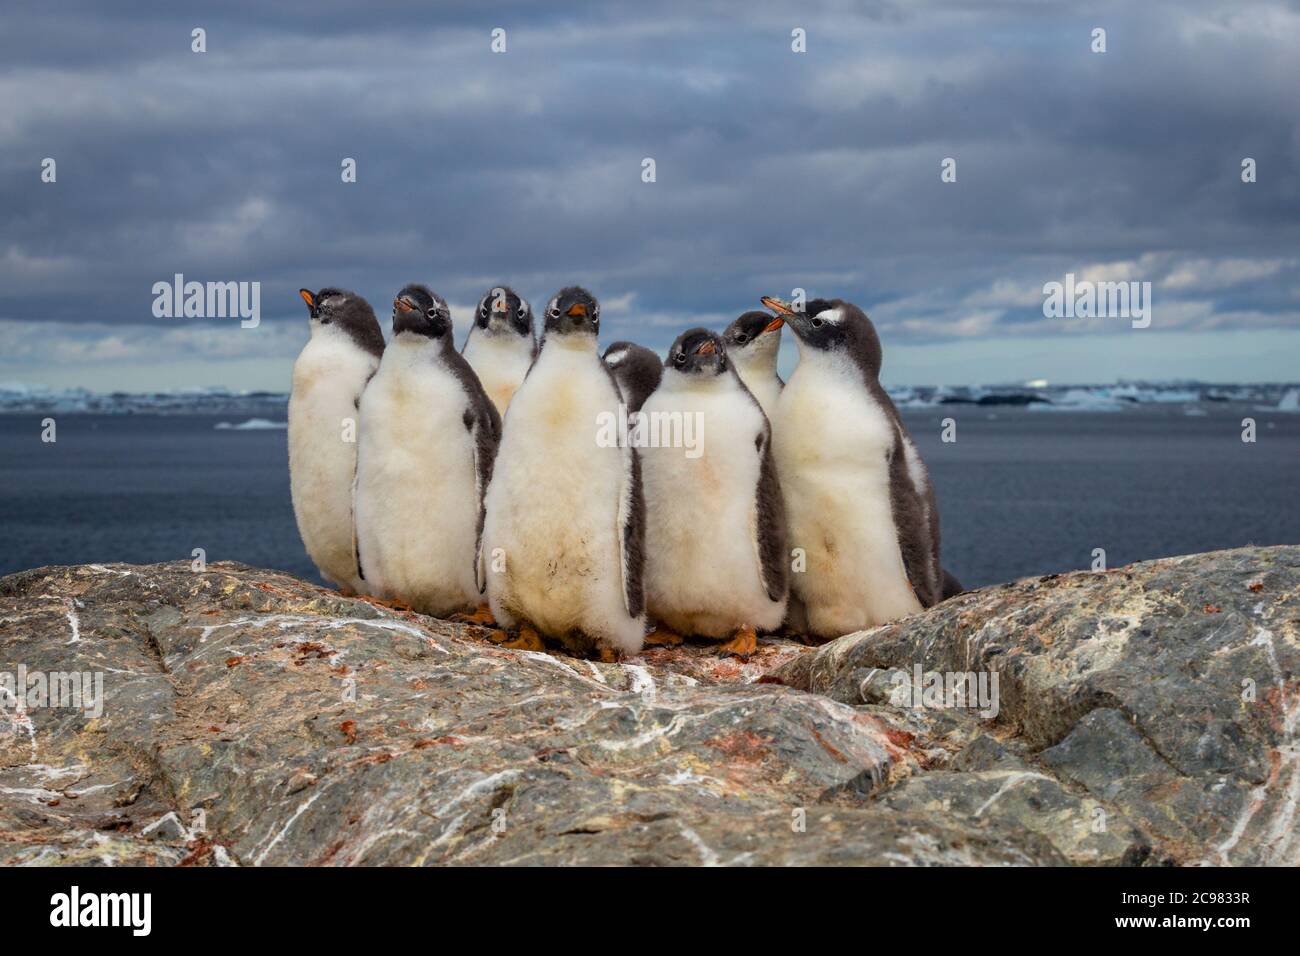 Groupe de manchots gentoo sur la pierre nichent en Antarctique sur fond de ciel sombre, péninsule antarctique. Banque D'Images